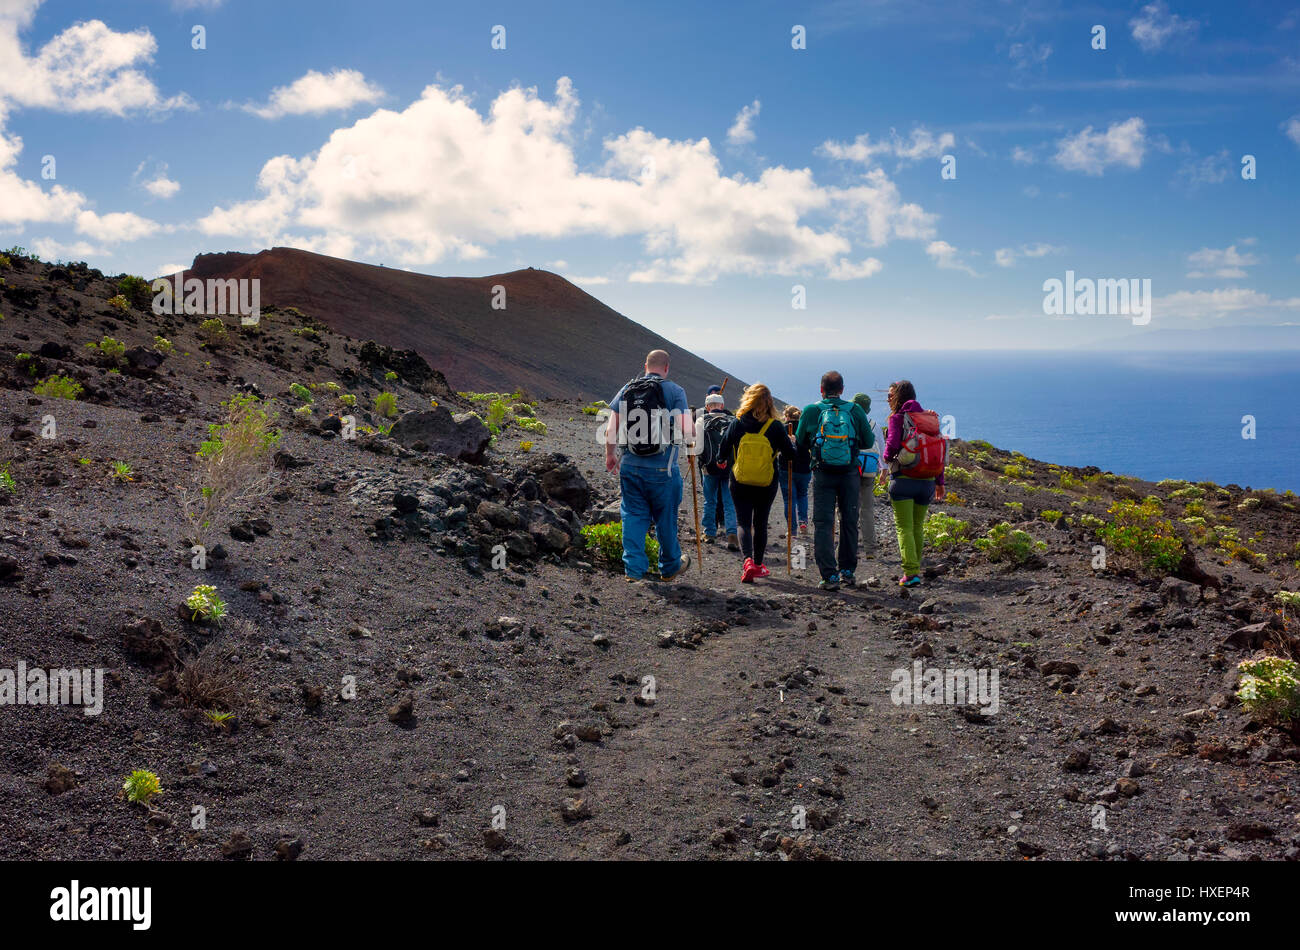 Les touristes le long d'un chemin de randonnée sur une visite guidée dans la région de la Cumbre Vieja, Fuencaliente de La Palma. Le paysage est la roche de lave créé par les volcans dans la région. Très peu de végétation est capable de croître sur cette terre Barron. Banque D'Images